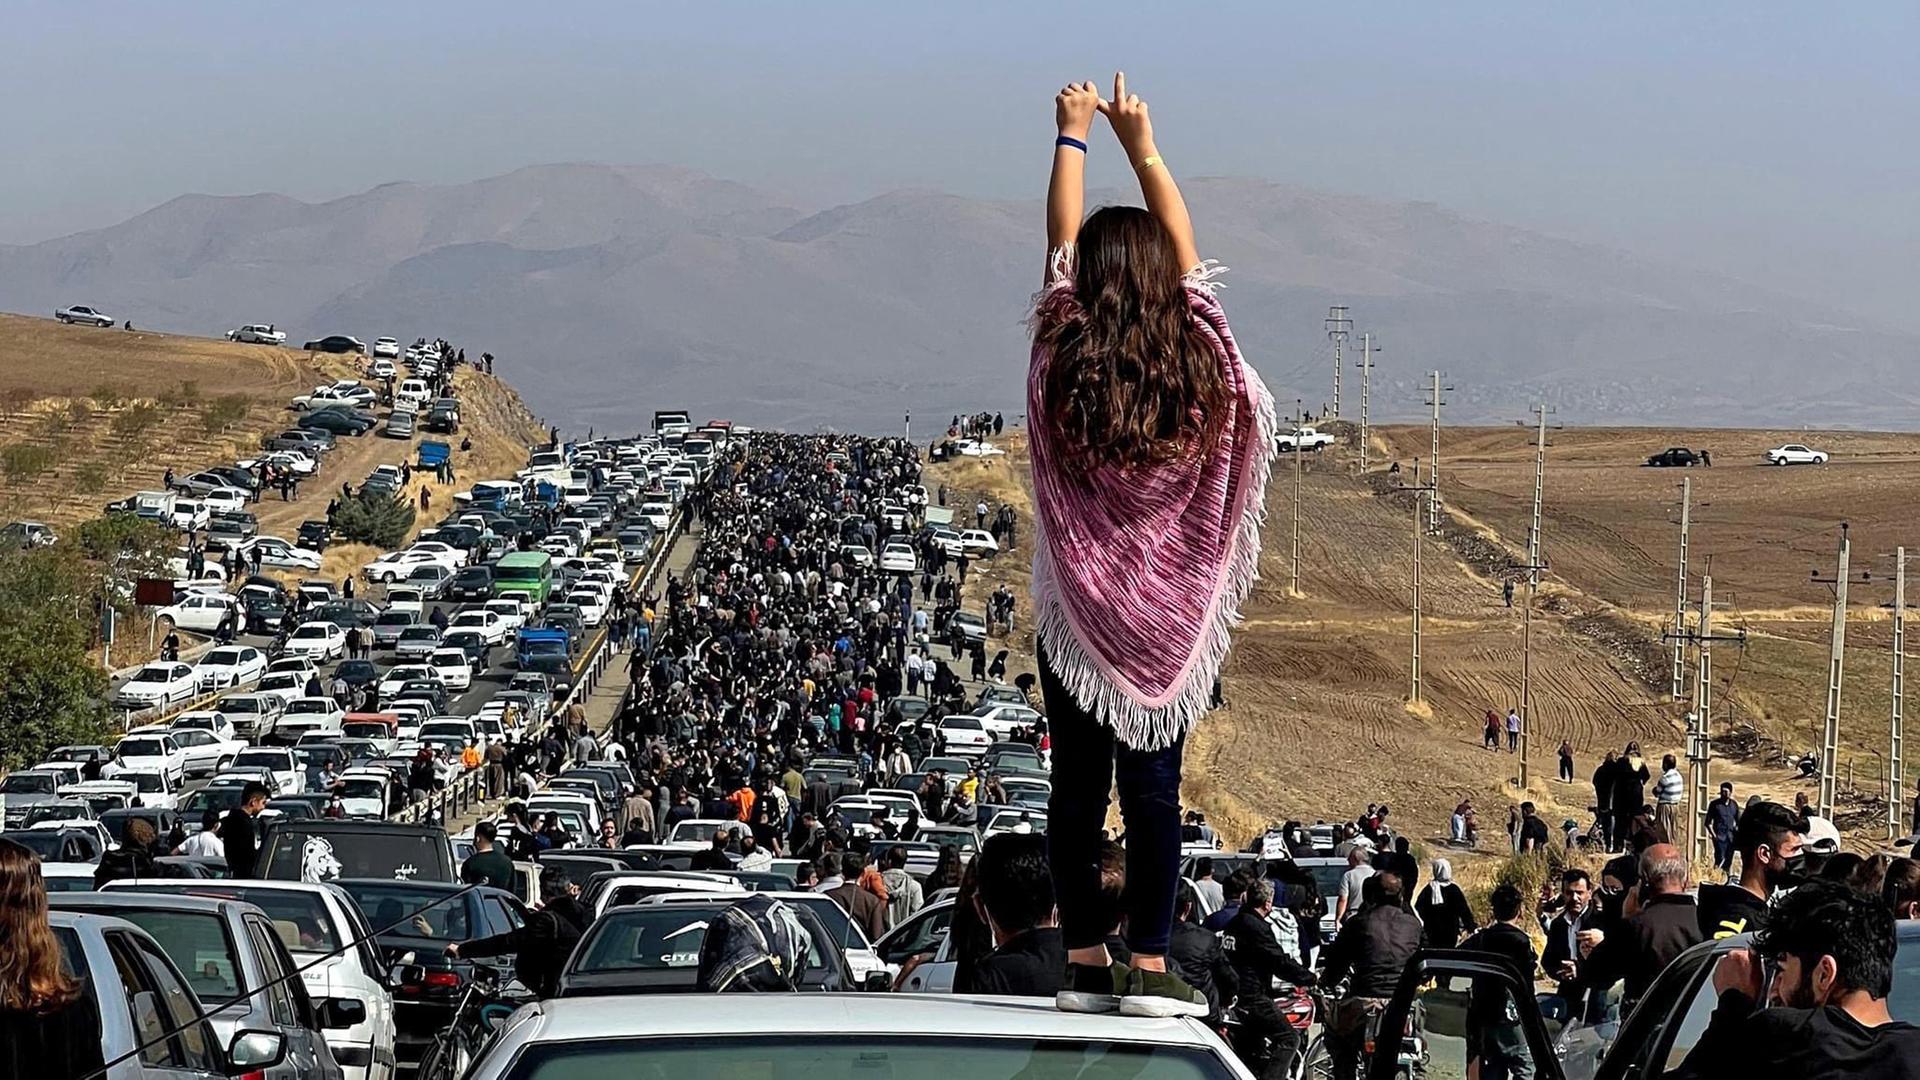 Das Foto zeigt eine Demonstration im Iran. Vorne steht eine Frau ohne Kopf-Tuch auf einem Auto.